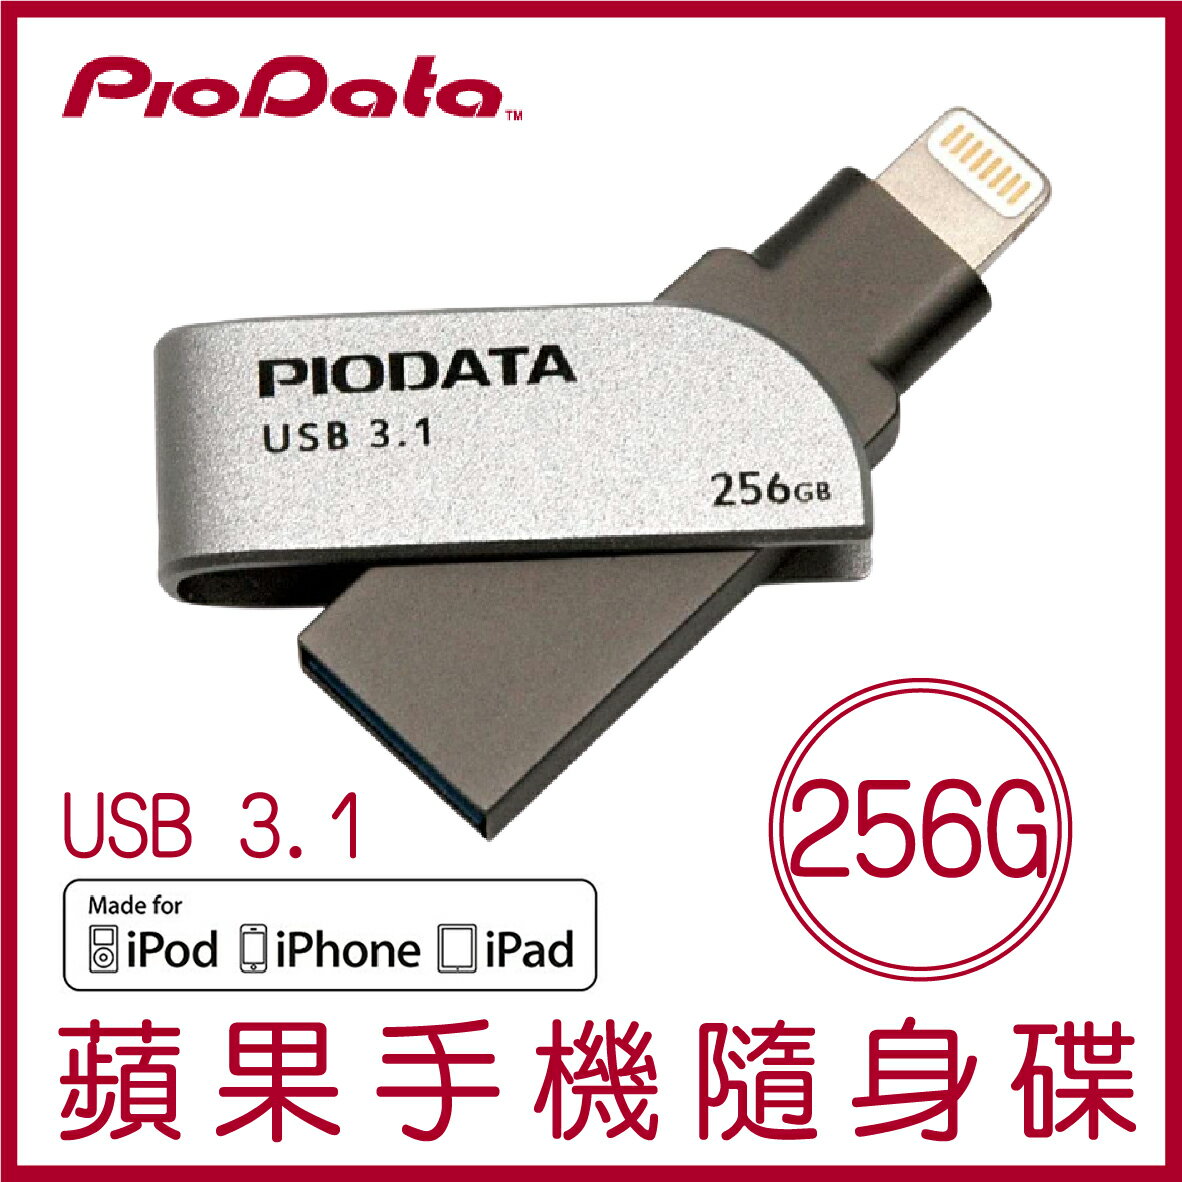 【最高22%點數】【現貨】PIODATA iXflash 256GB Lightning USB3.1 蘋果隨身碟 iOS專用 OTG 雙用隨身碟【限定樂天APP下單】